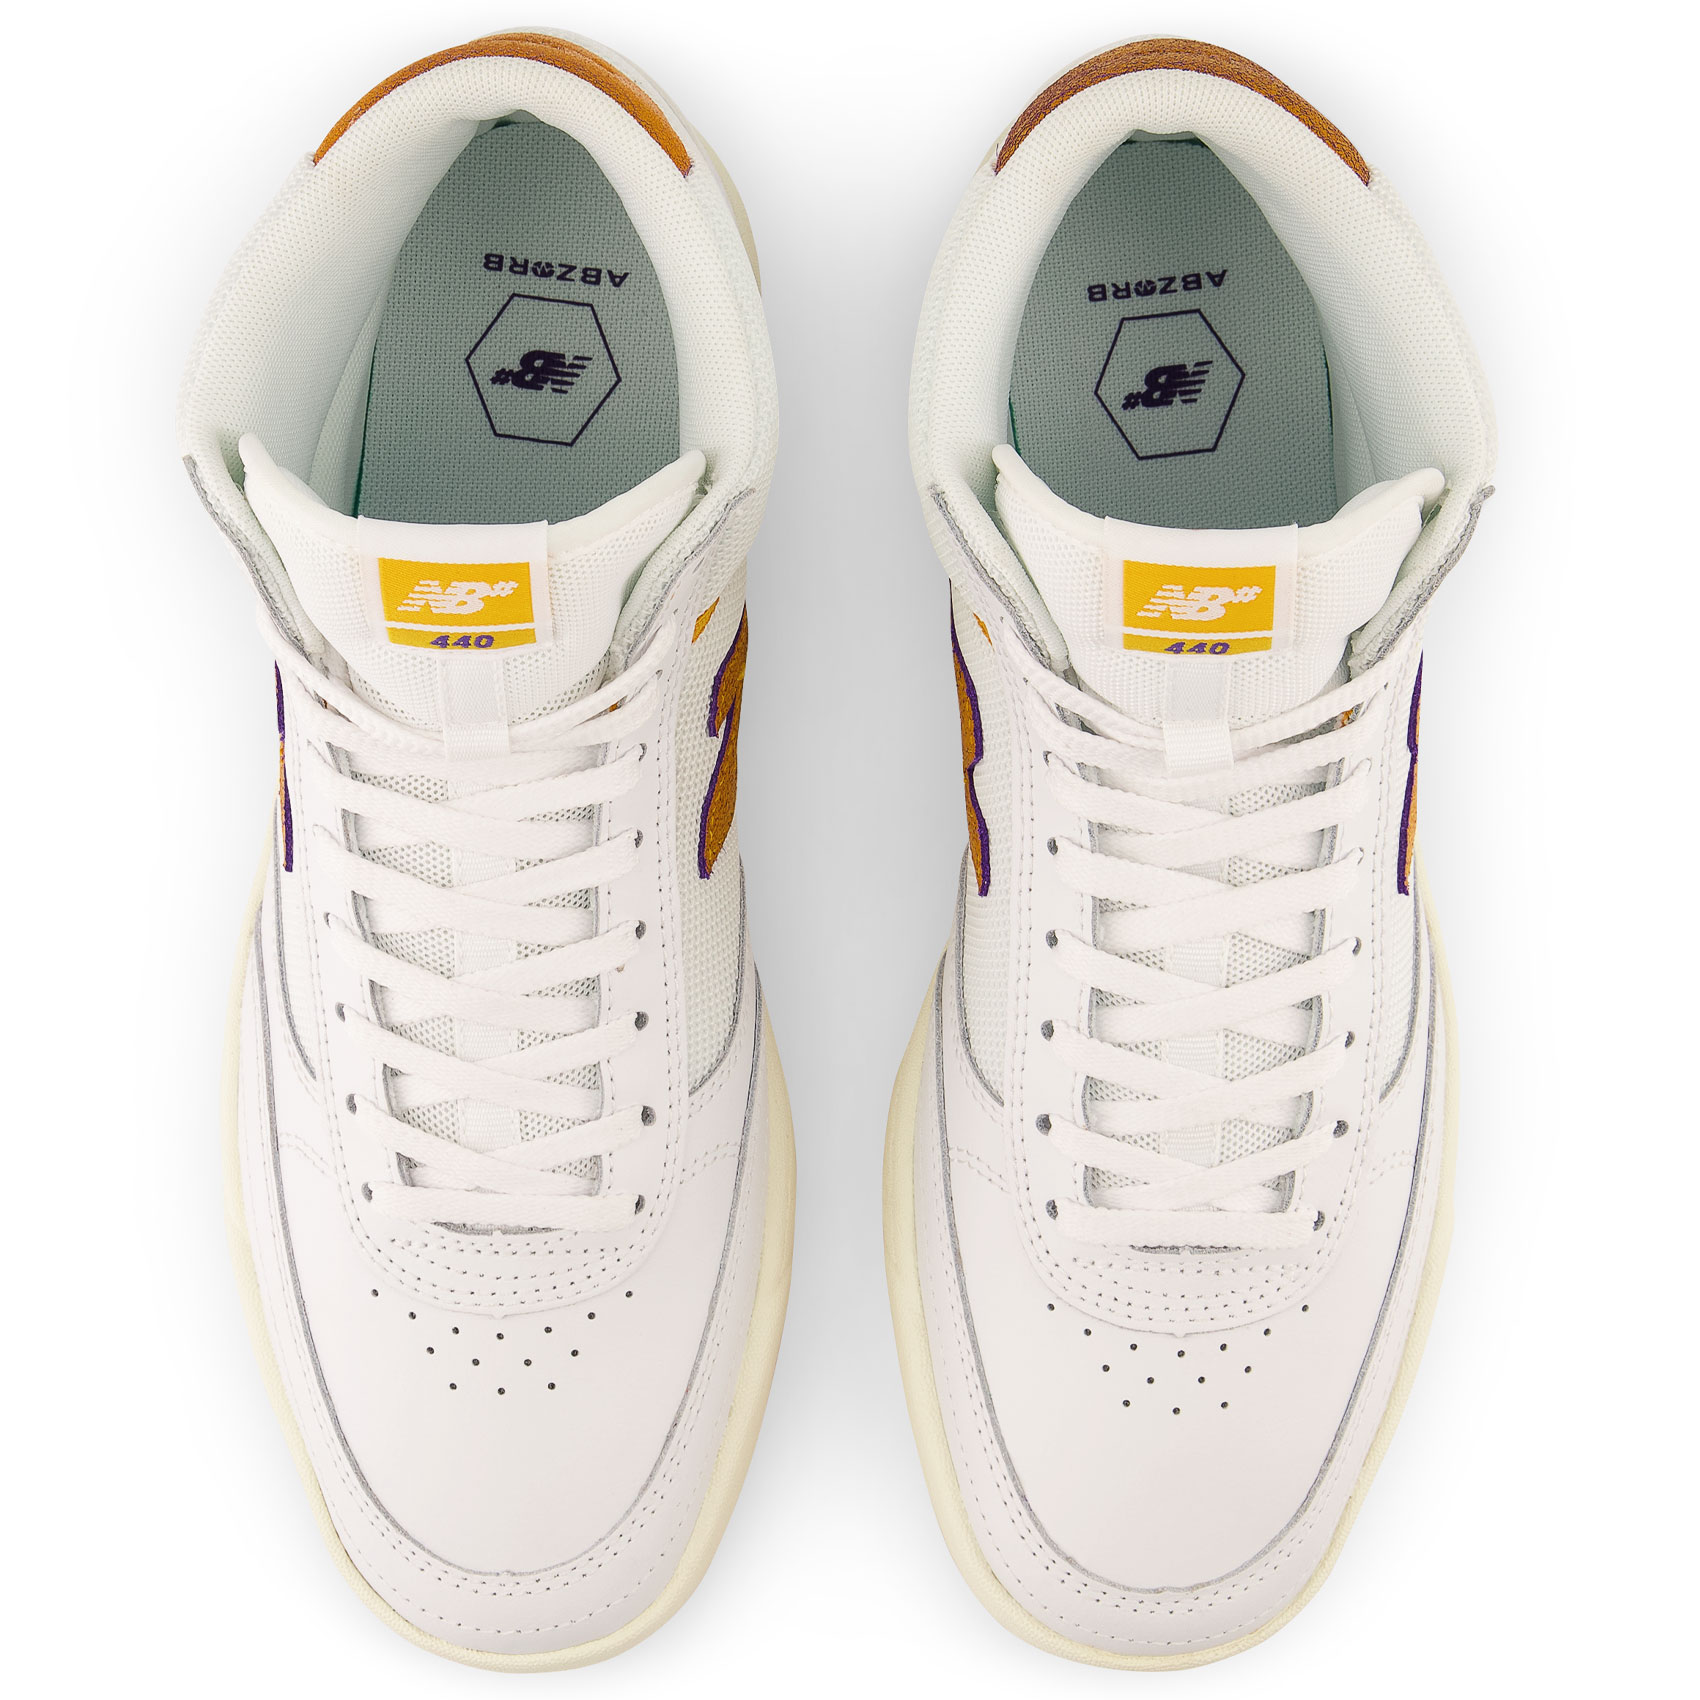 New Balance Numeric Schuhe 440 High (white yellow)